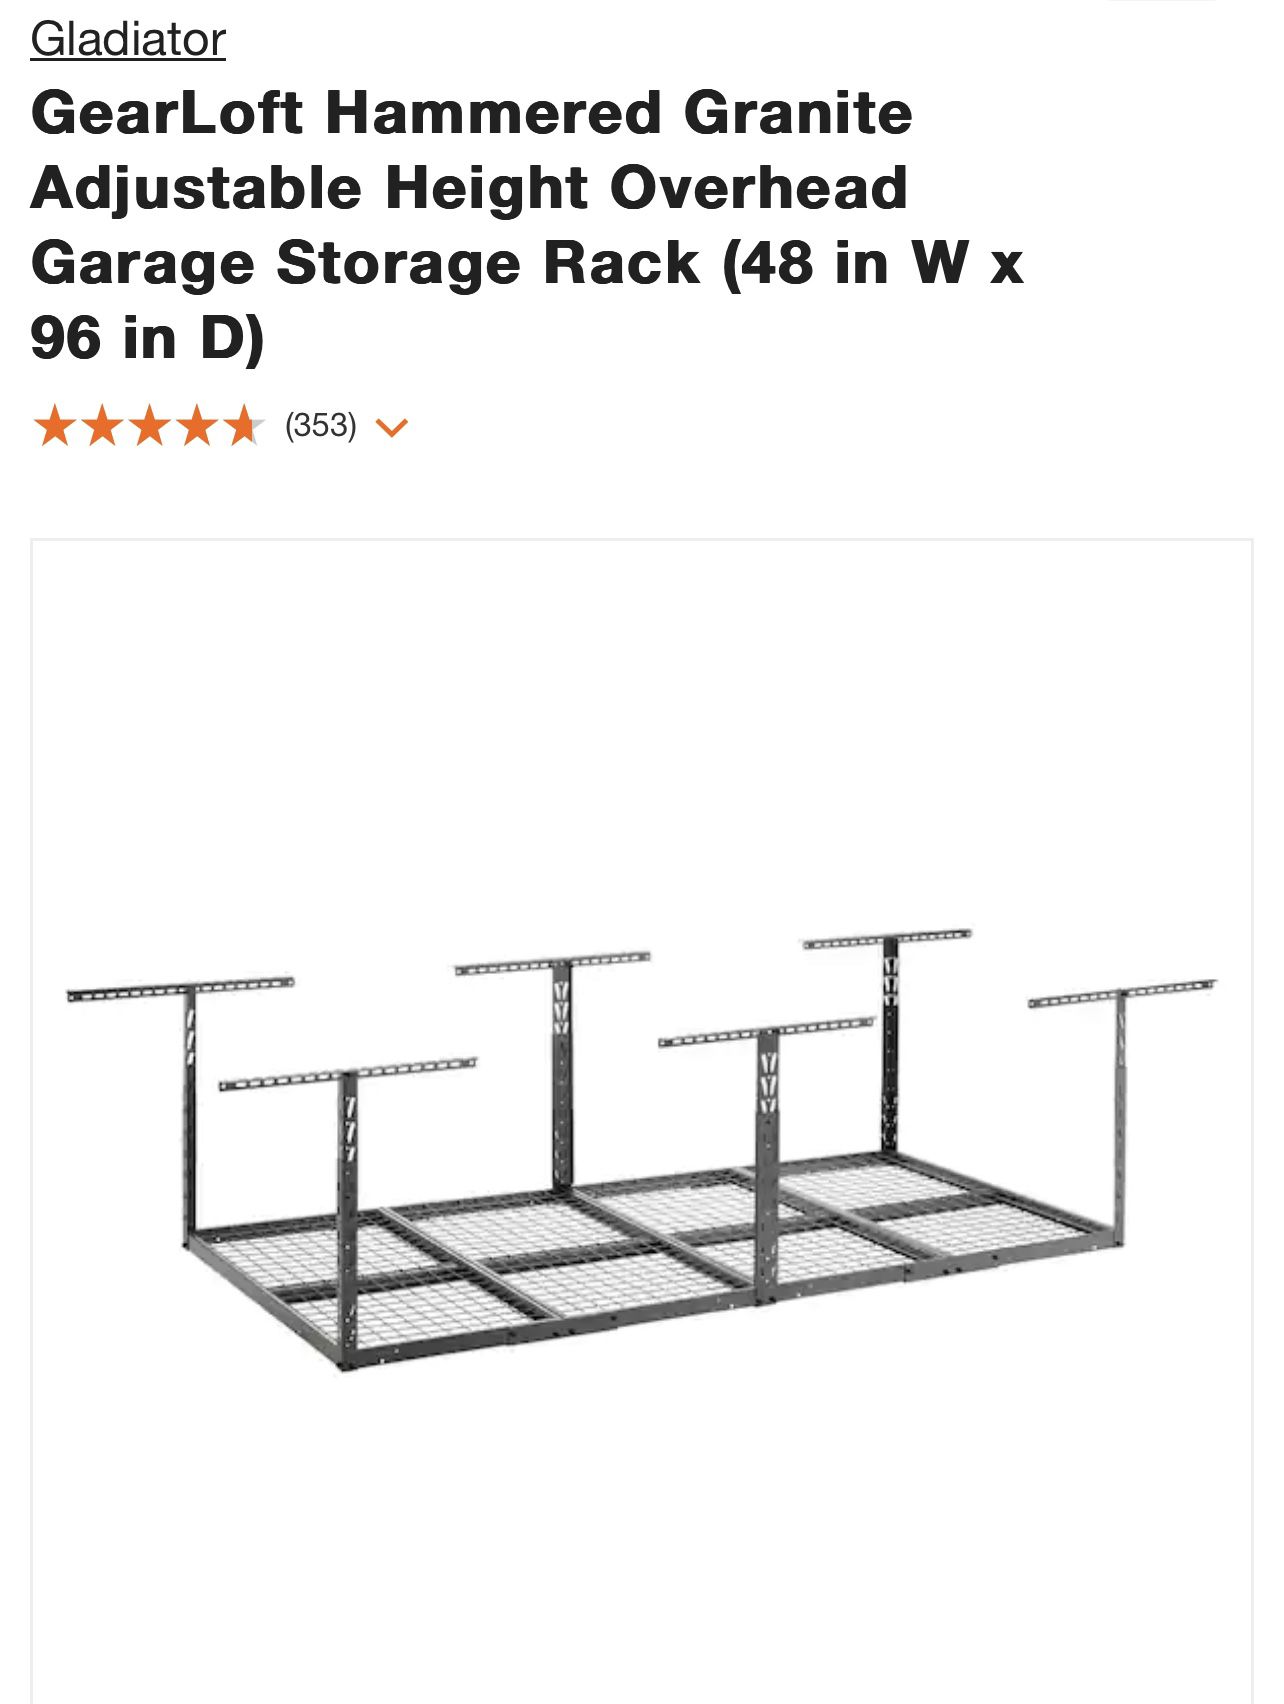 “NEW” Garage Storage Rack 